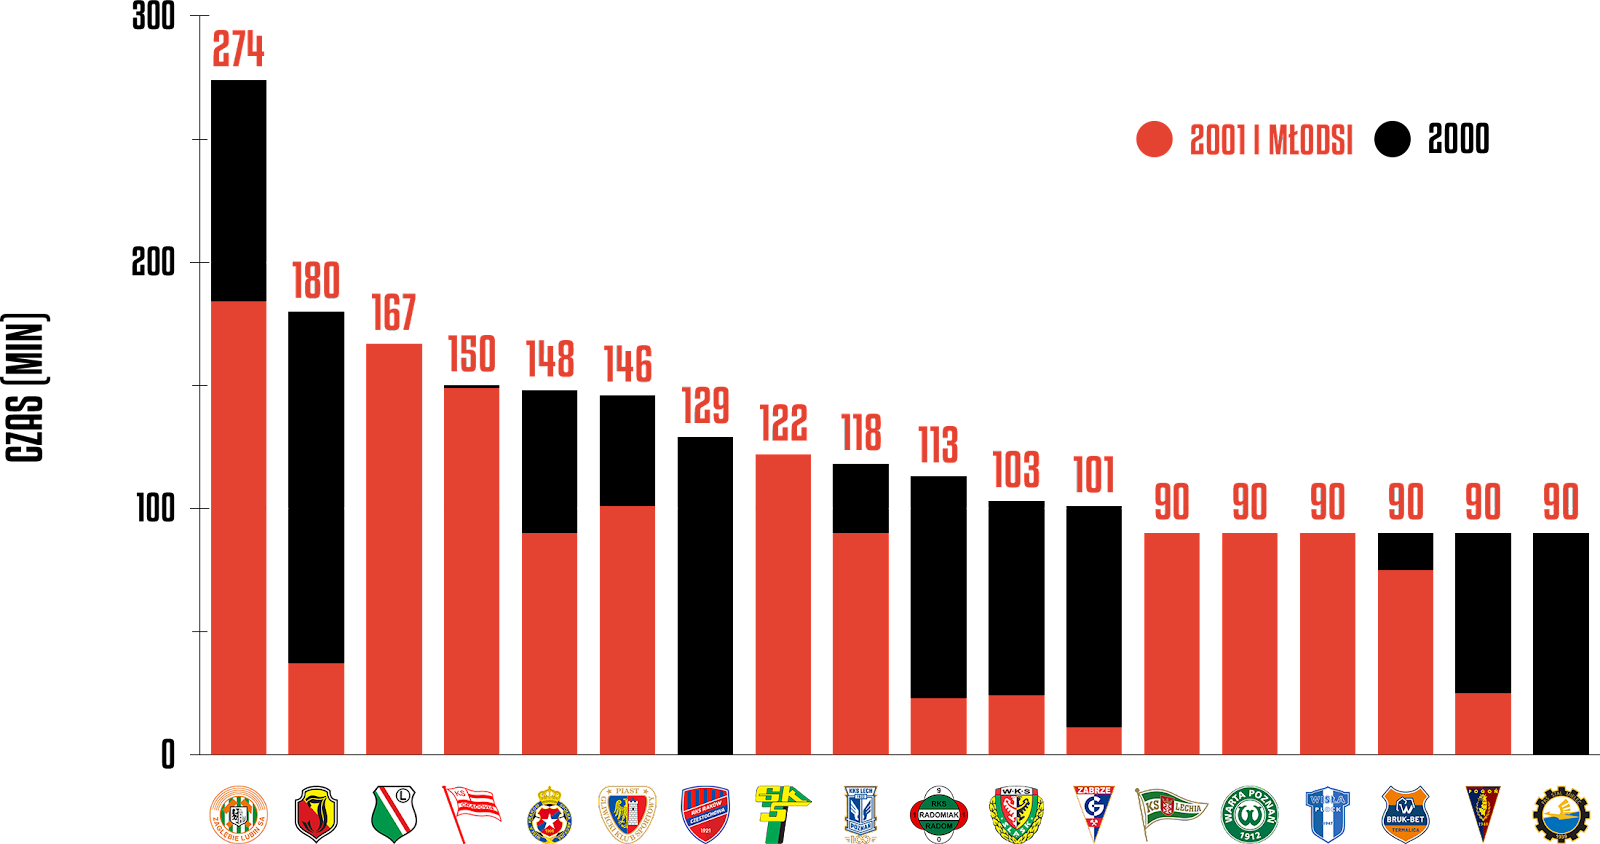 Klasyfikacja klubów pod względem rozegranego czasu przez młodzieżowców w 32. kolejce PKO Ekstraklasy<br><br>Źródło: Opracowanie własne na podstawie ekstrastats.pl<br><br>graf. Bartosz Urban